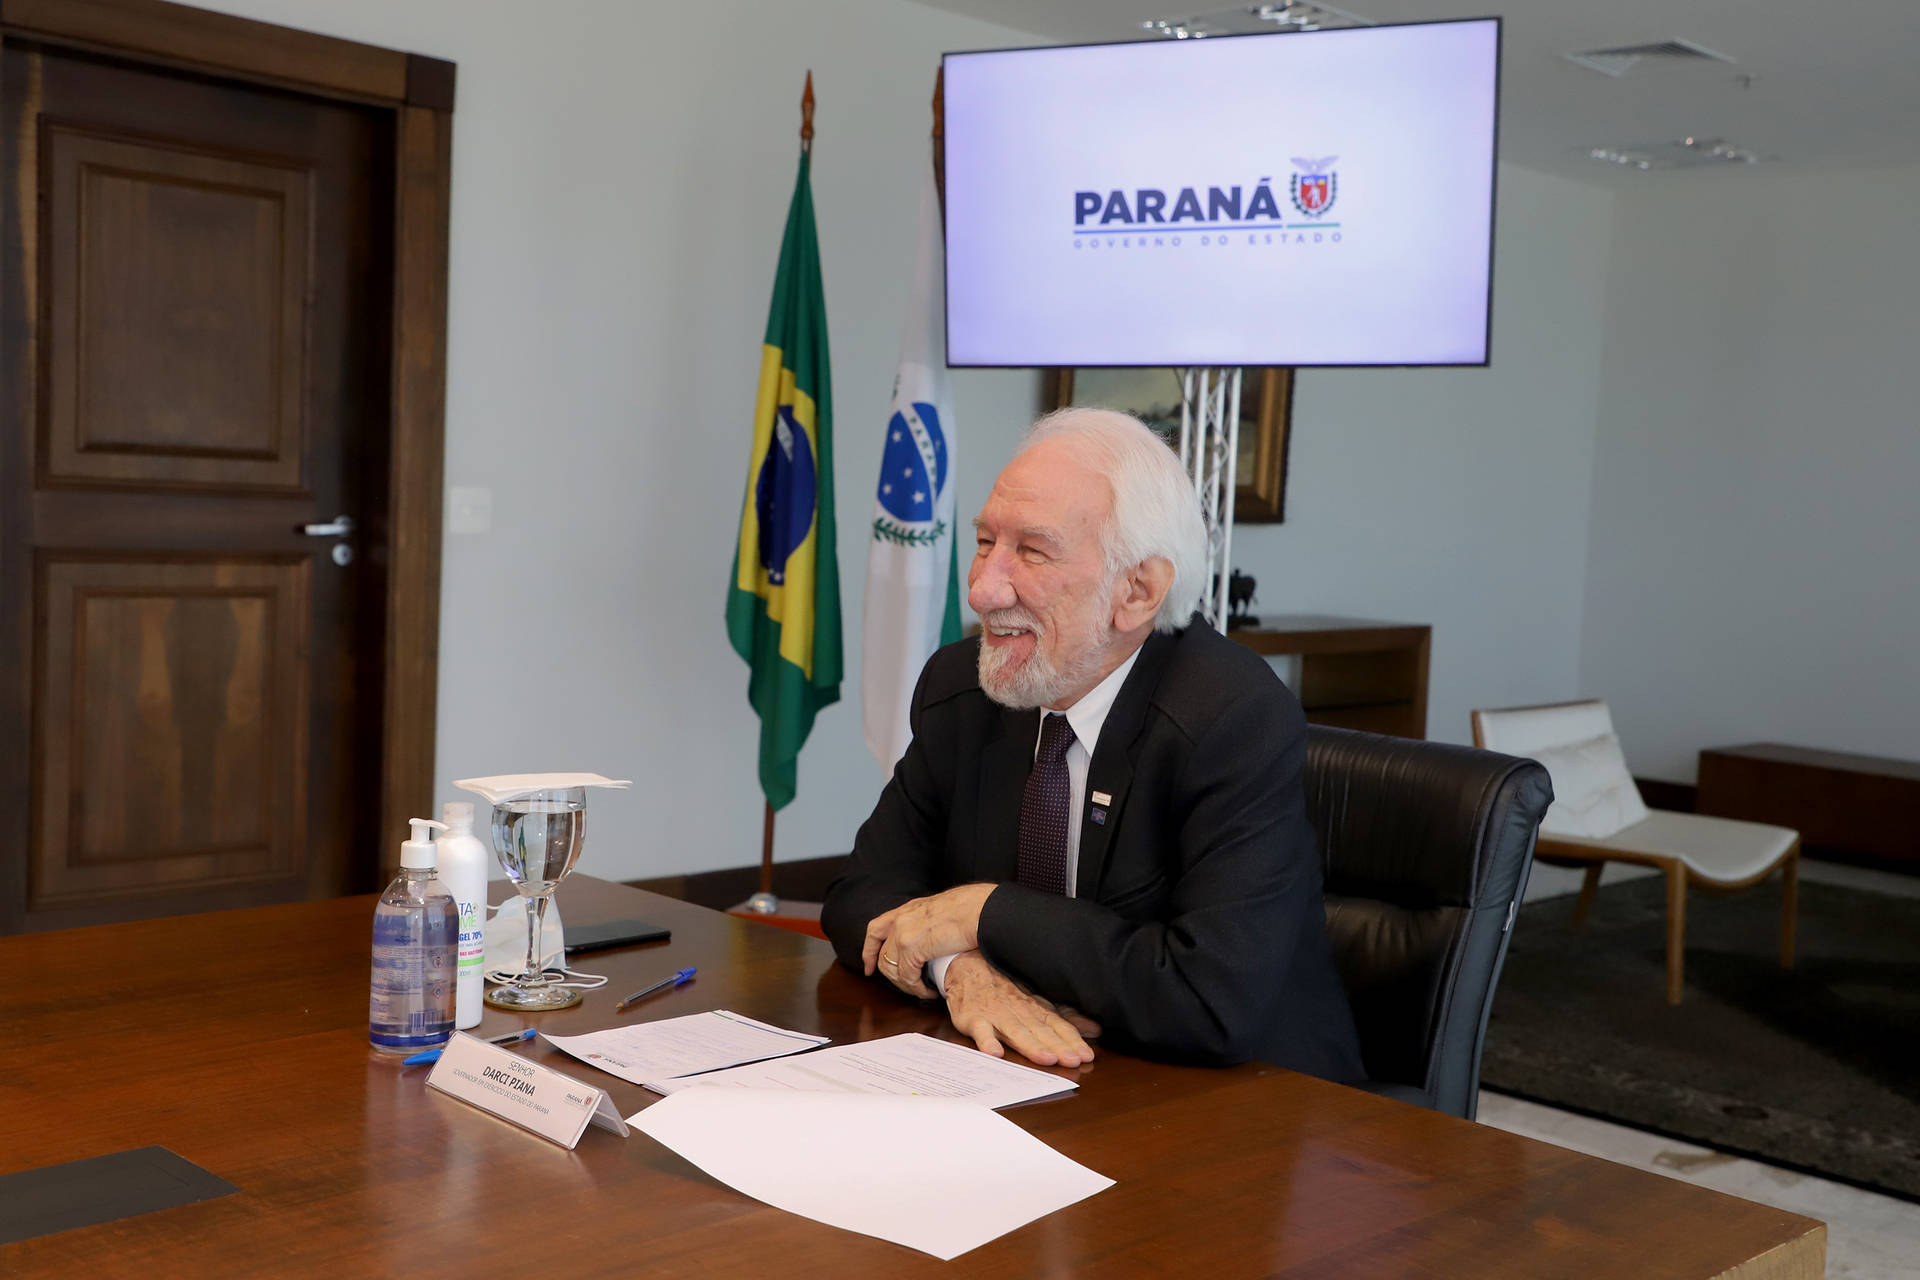 Imagem referente a Estado reforça compromisso com as cooperativas, que investirão R$ 30,3 bilhões no Paraná até 2026